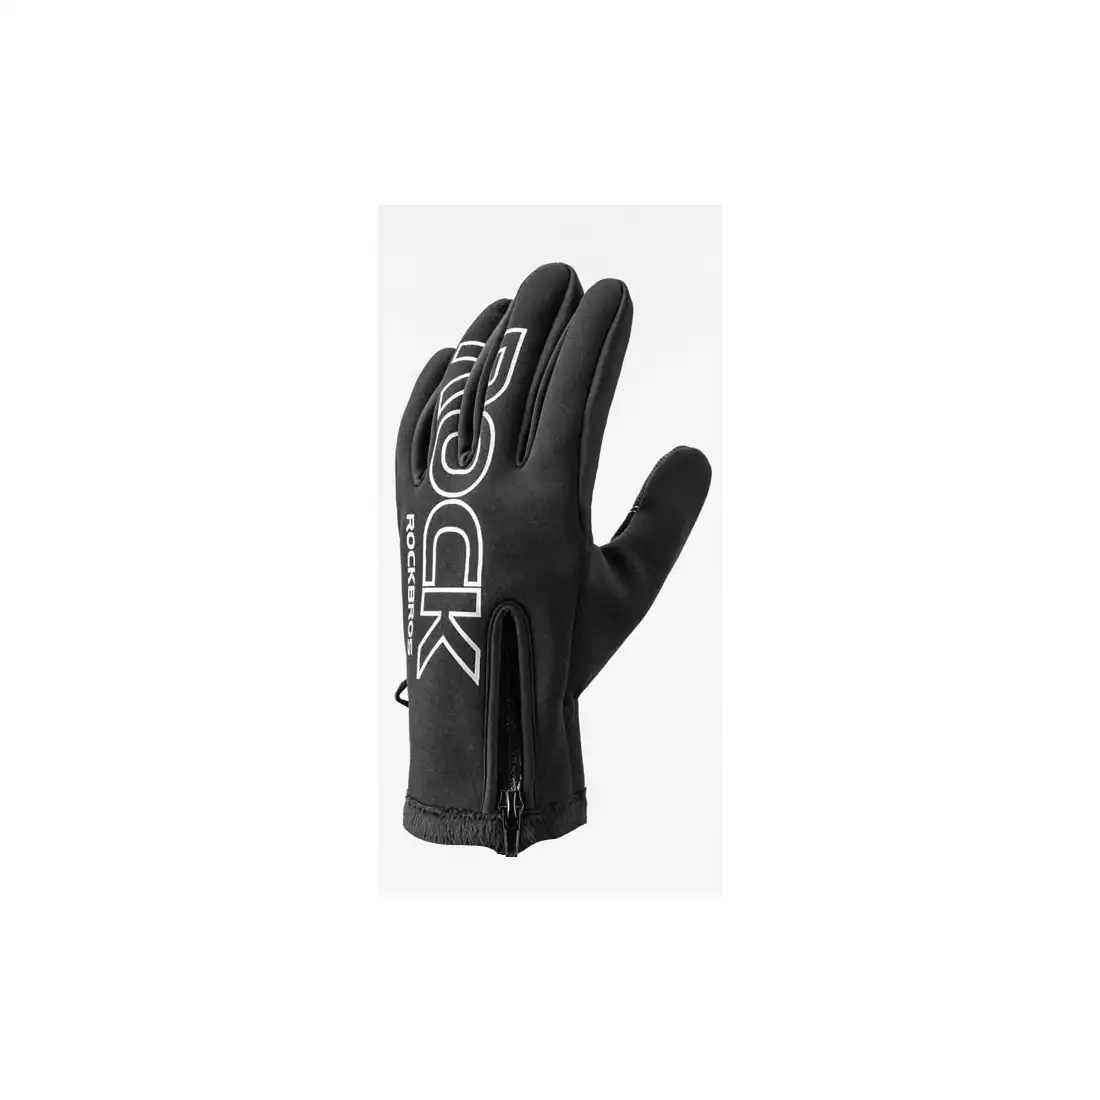 Rockbros zimowe rękawiczki rowerowe softshell, czarne S091-4BK